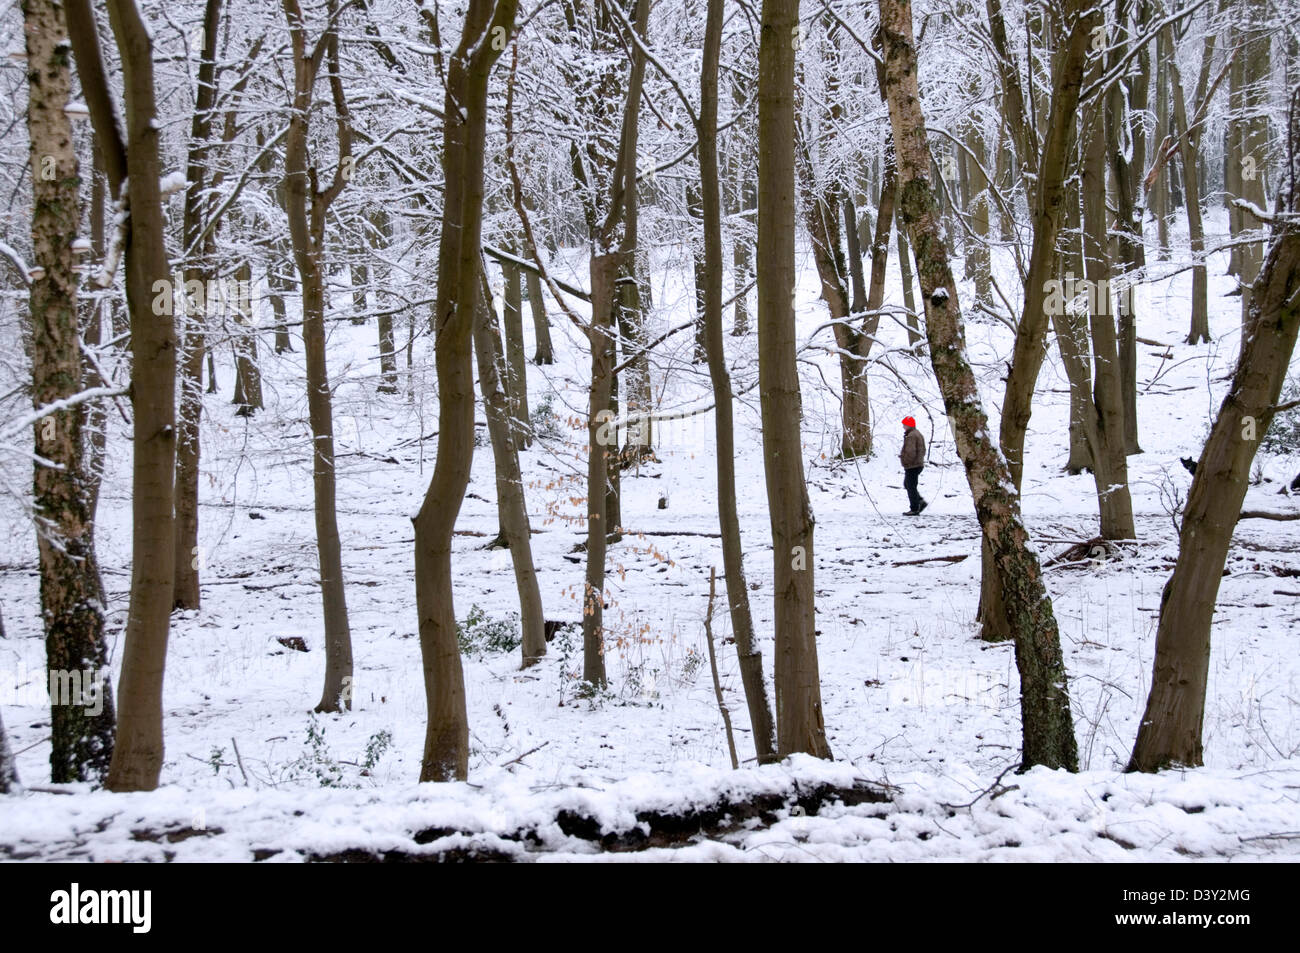 Bucks - Chiltern Hills - coperta di neve bosco - walker intravisto tra gli alberi - disattivato il sole d'inverno - tocco di colore Foto Stock